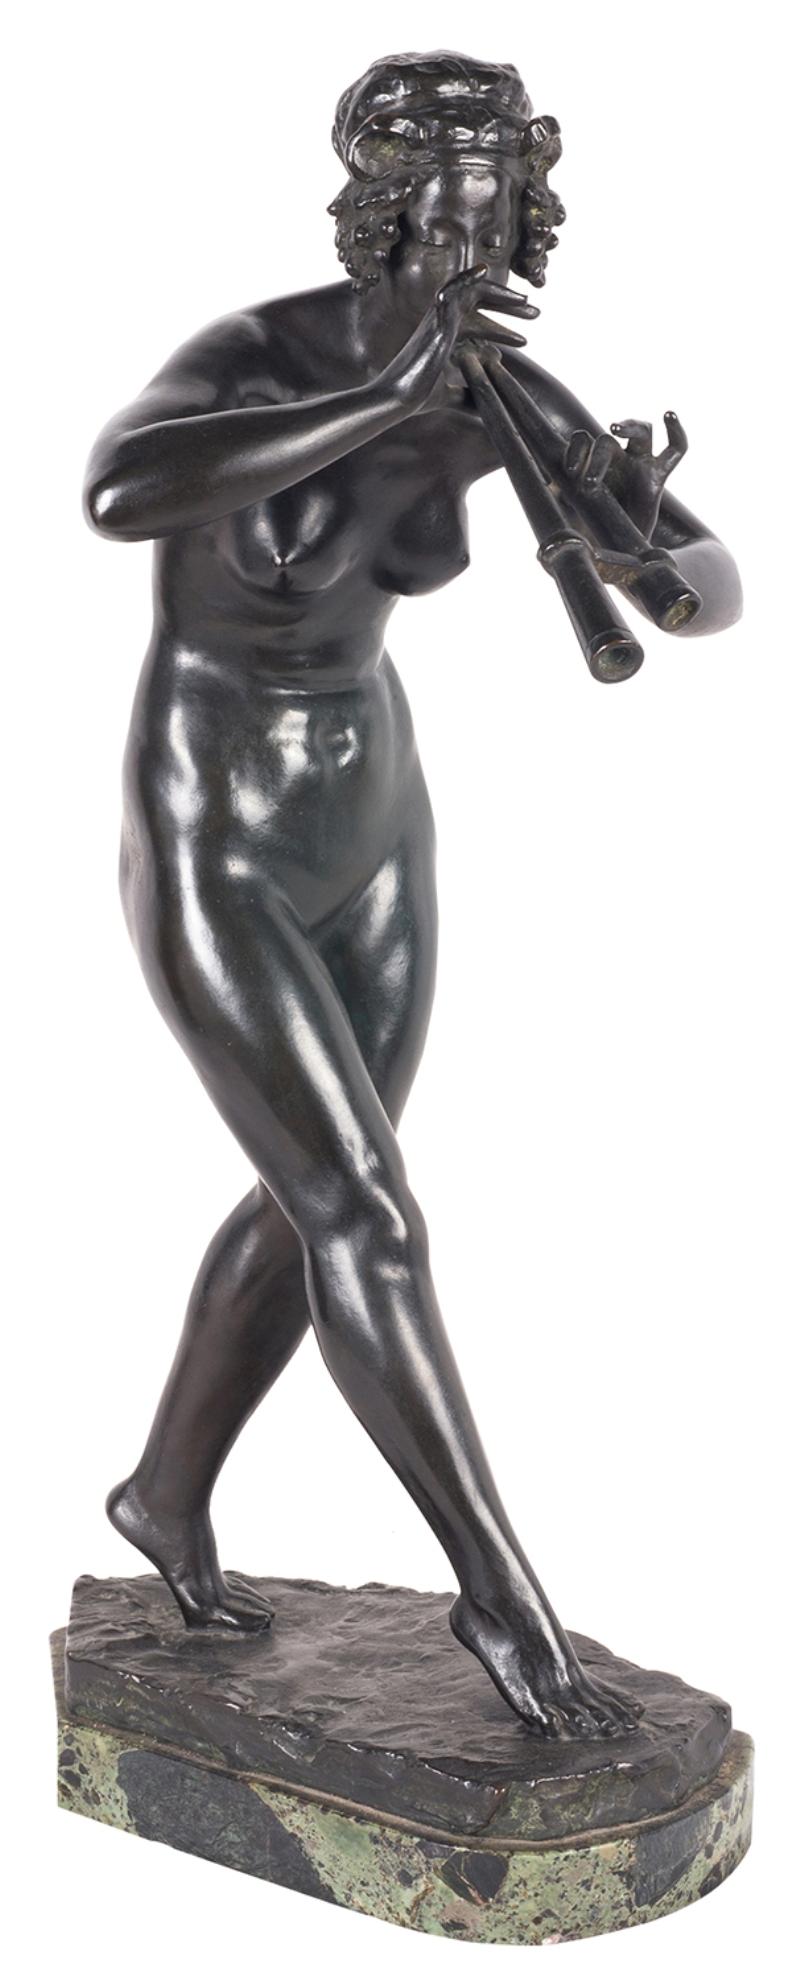 Sehr gute Bronzestatue eines weiblichen Aktes aus dem 19. Jahrhundert, der Pfeife spielt, auf einem Marmorsockel montiert.